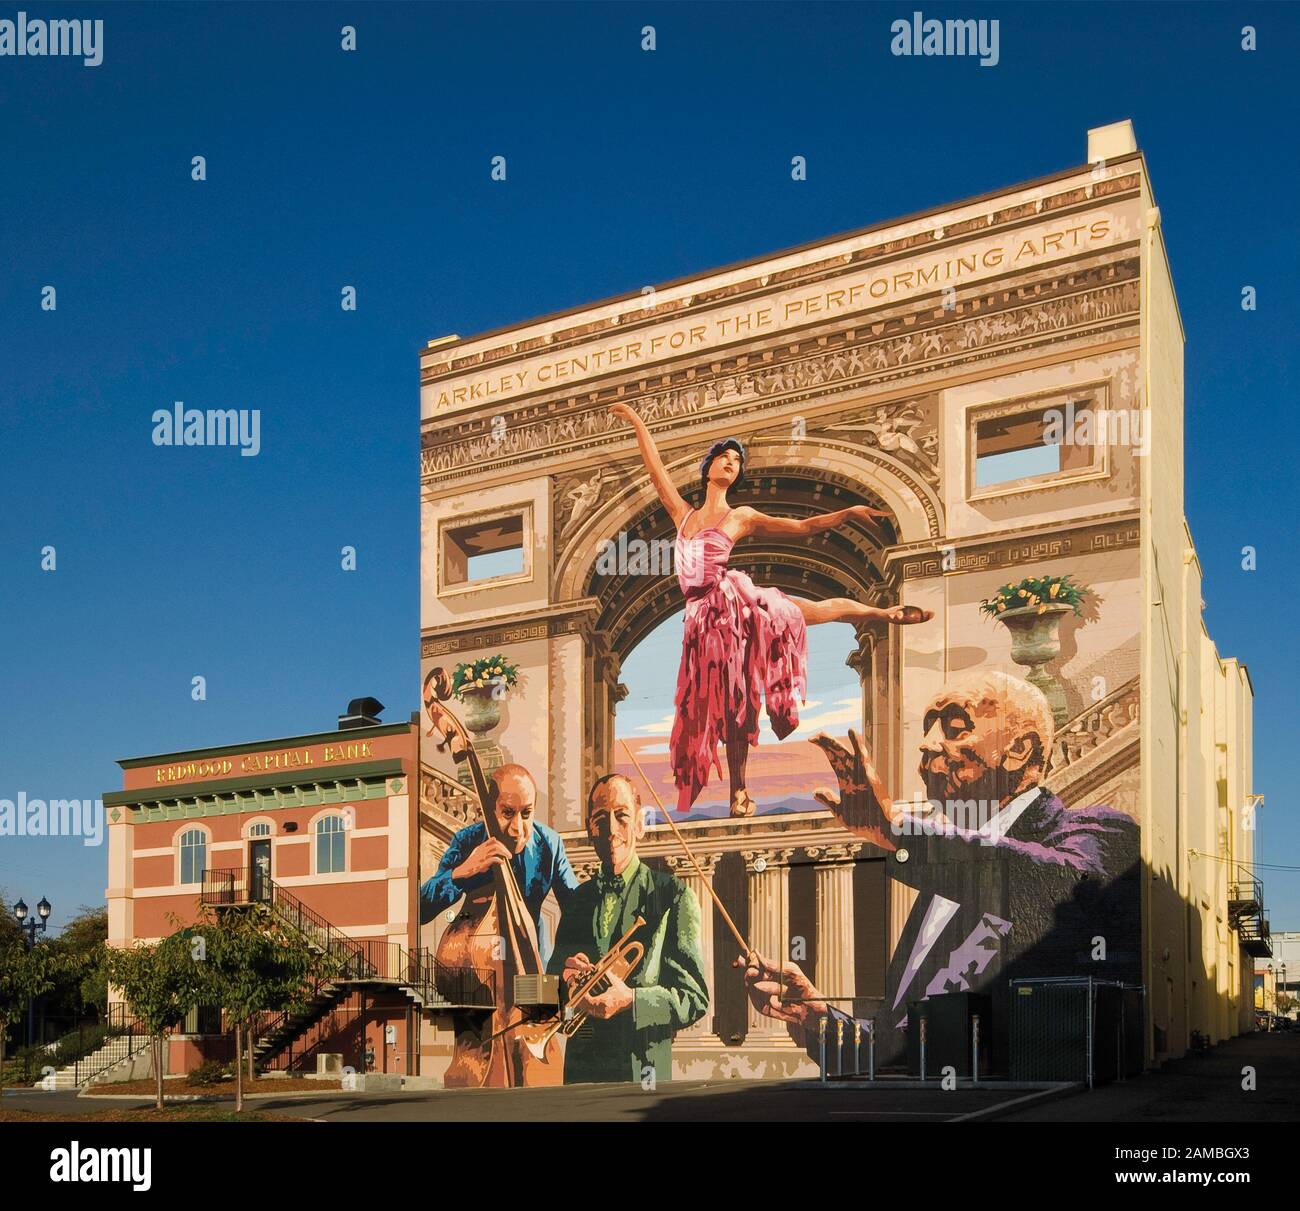 Hommage à l'architecture et aux arts de la scène murale de Duane Flatmo au Arkley Center for Performing Arts de F Street à Eureka, Californie, États-Unis Banque D'Images